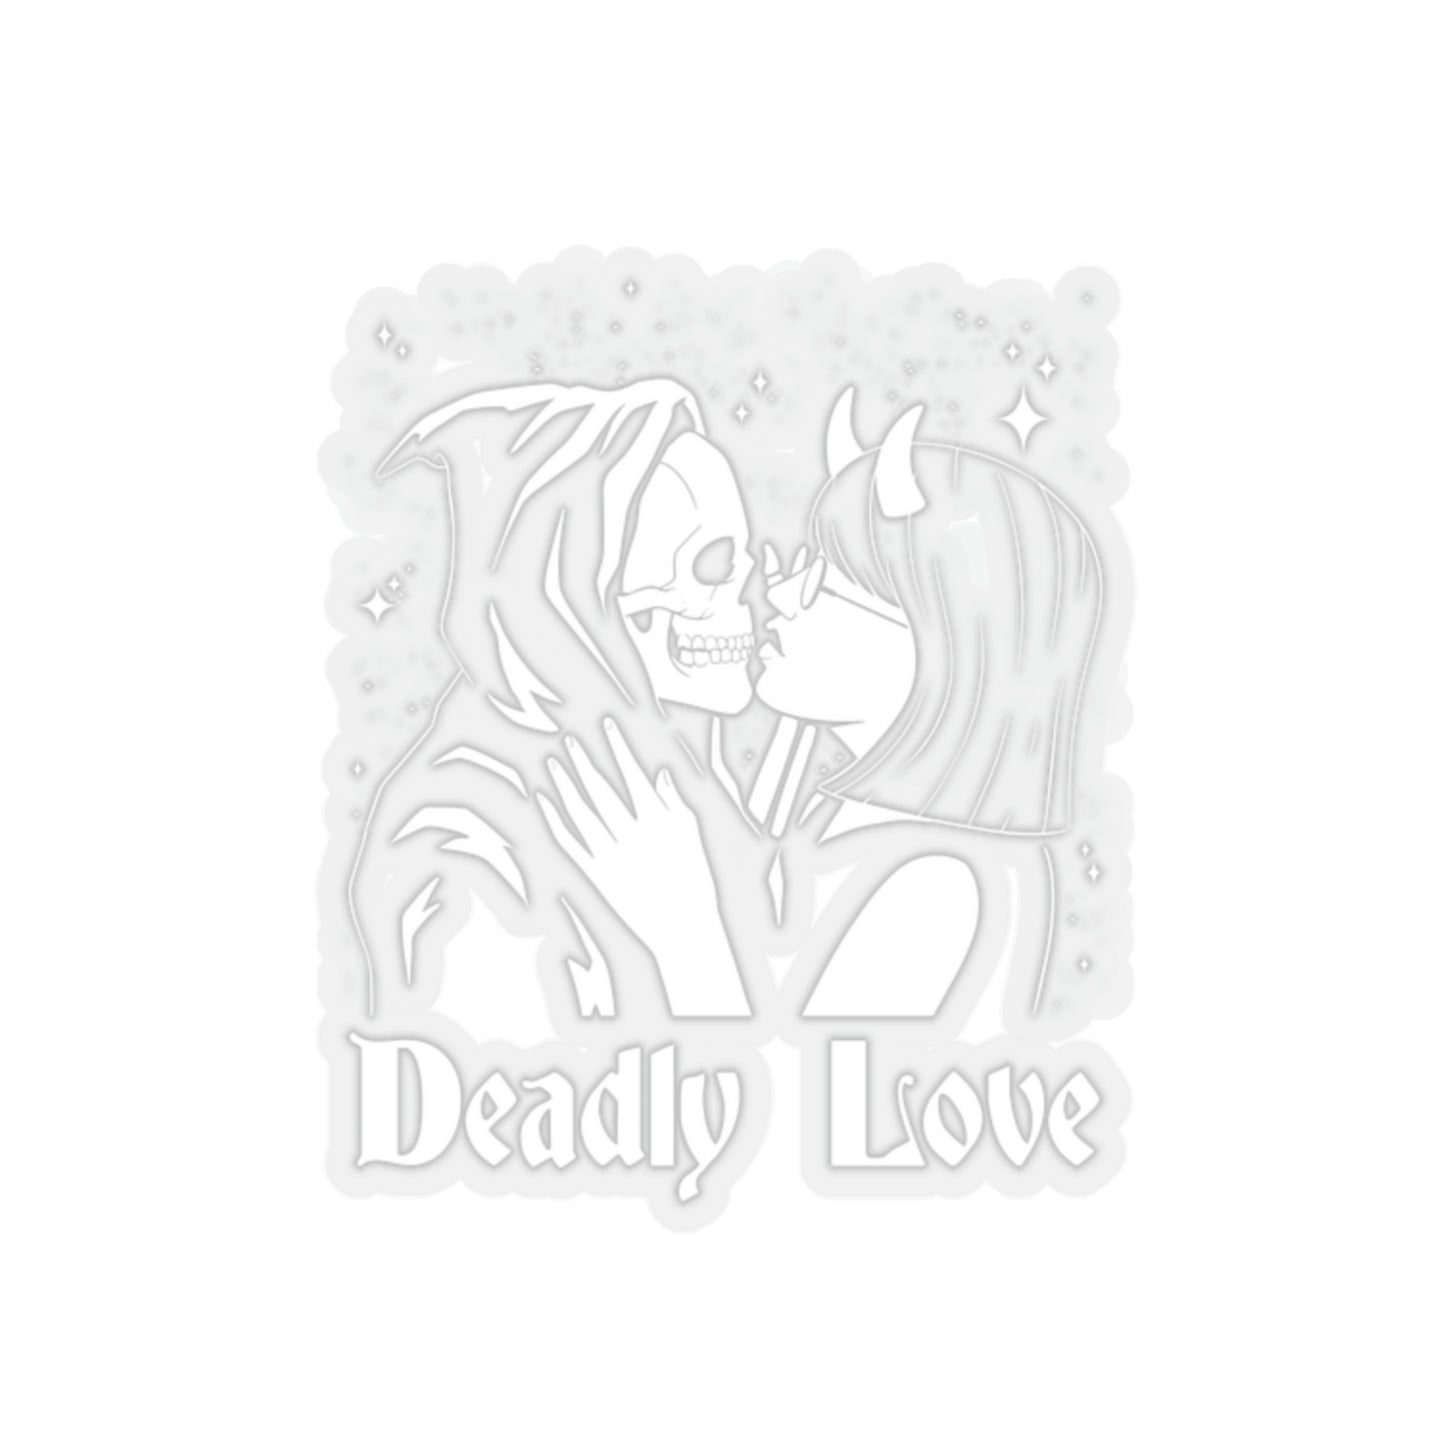 Deadly Love Skeleton Goth Aesthetic Sticker